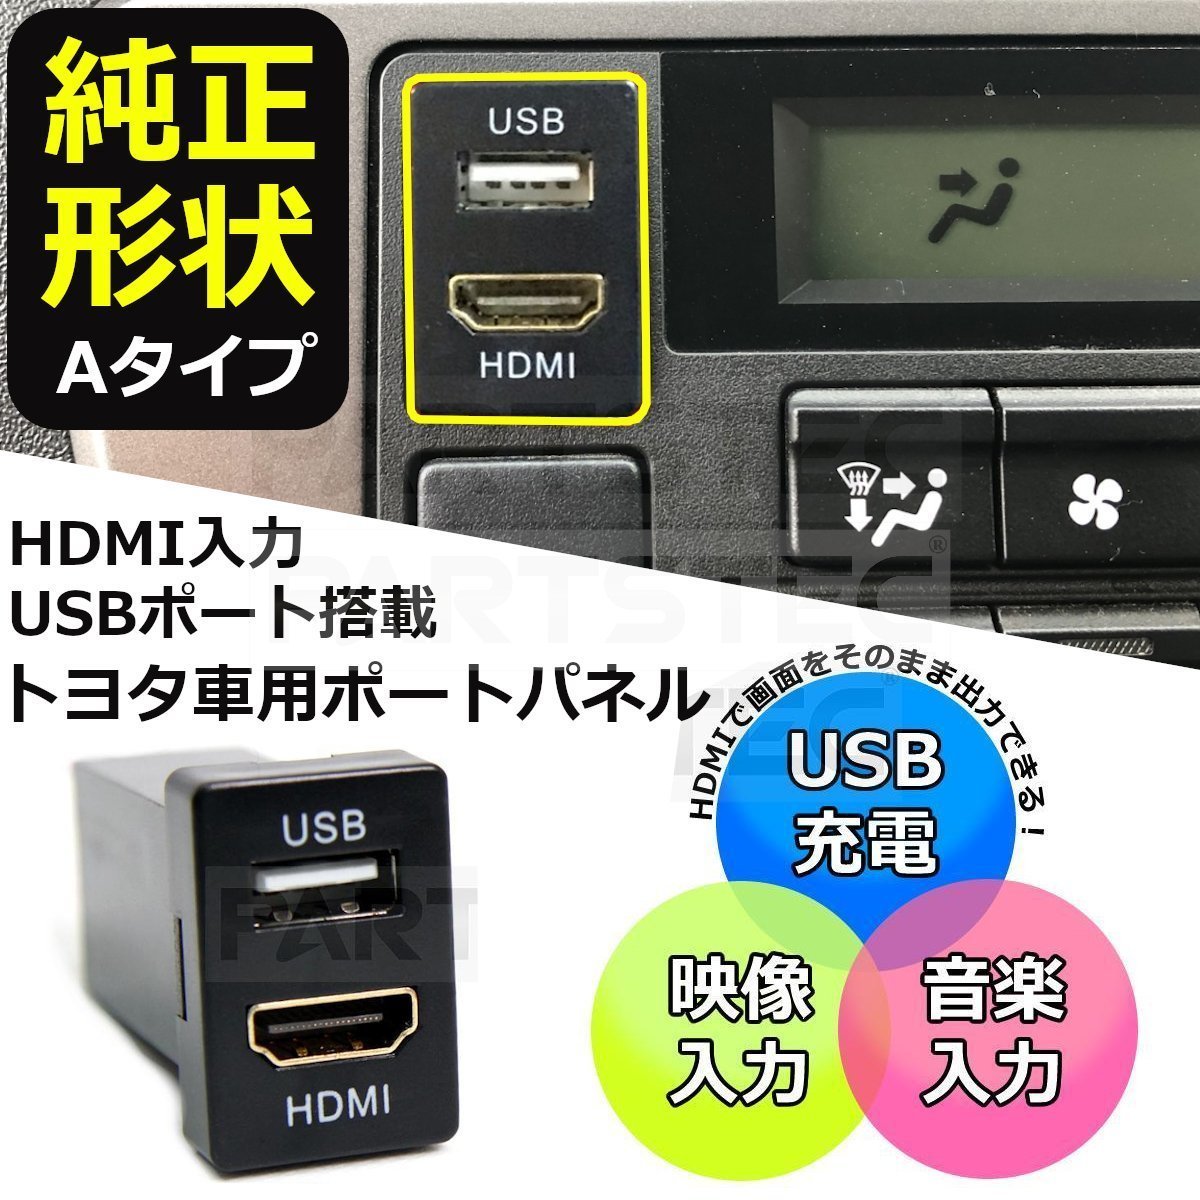 アルティス トヨタ Aタイプ HDMI USB ポート スイッチ ホール パネル スマホ ナビ 充電器 車内 /134-52 A-1_画像1